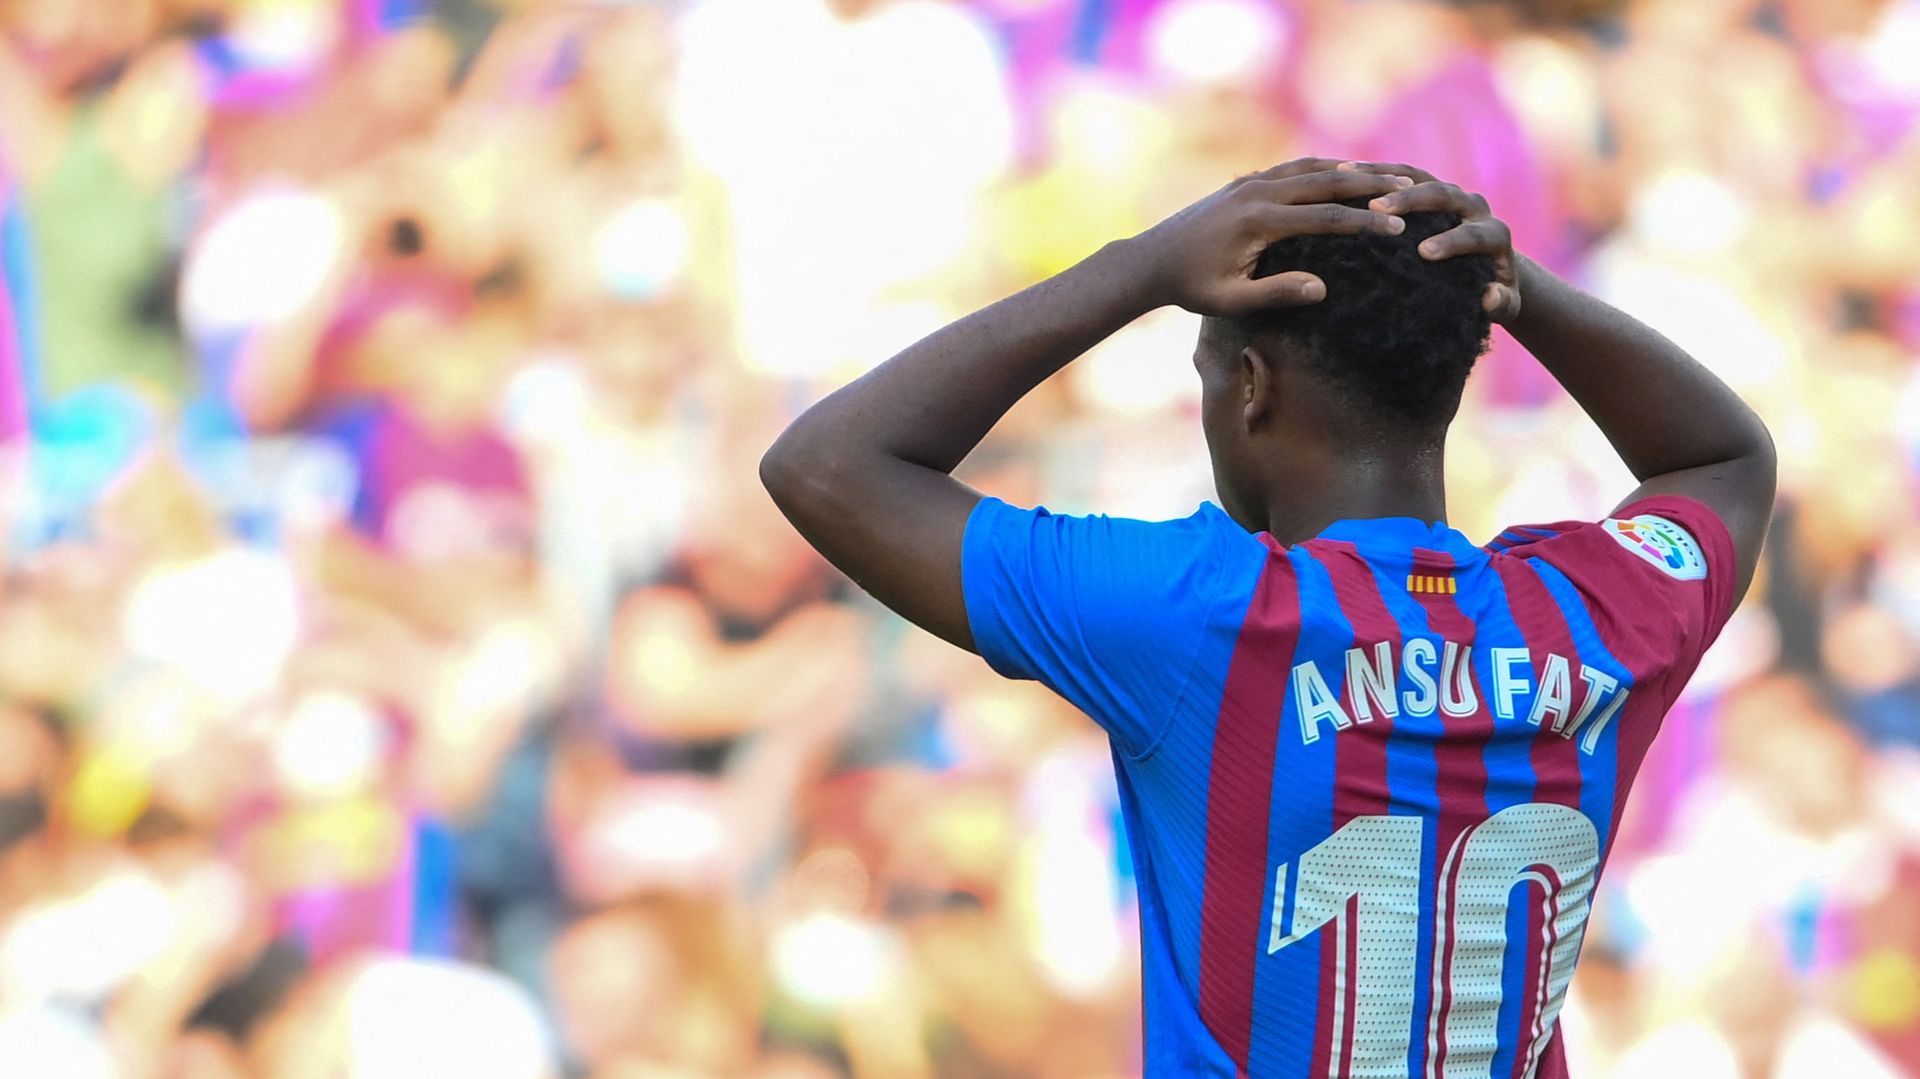 La Liga - Le jeune talent du FC Barcelone Ansu Fati à nouveau blessé et indisponible plusieurs mois